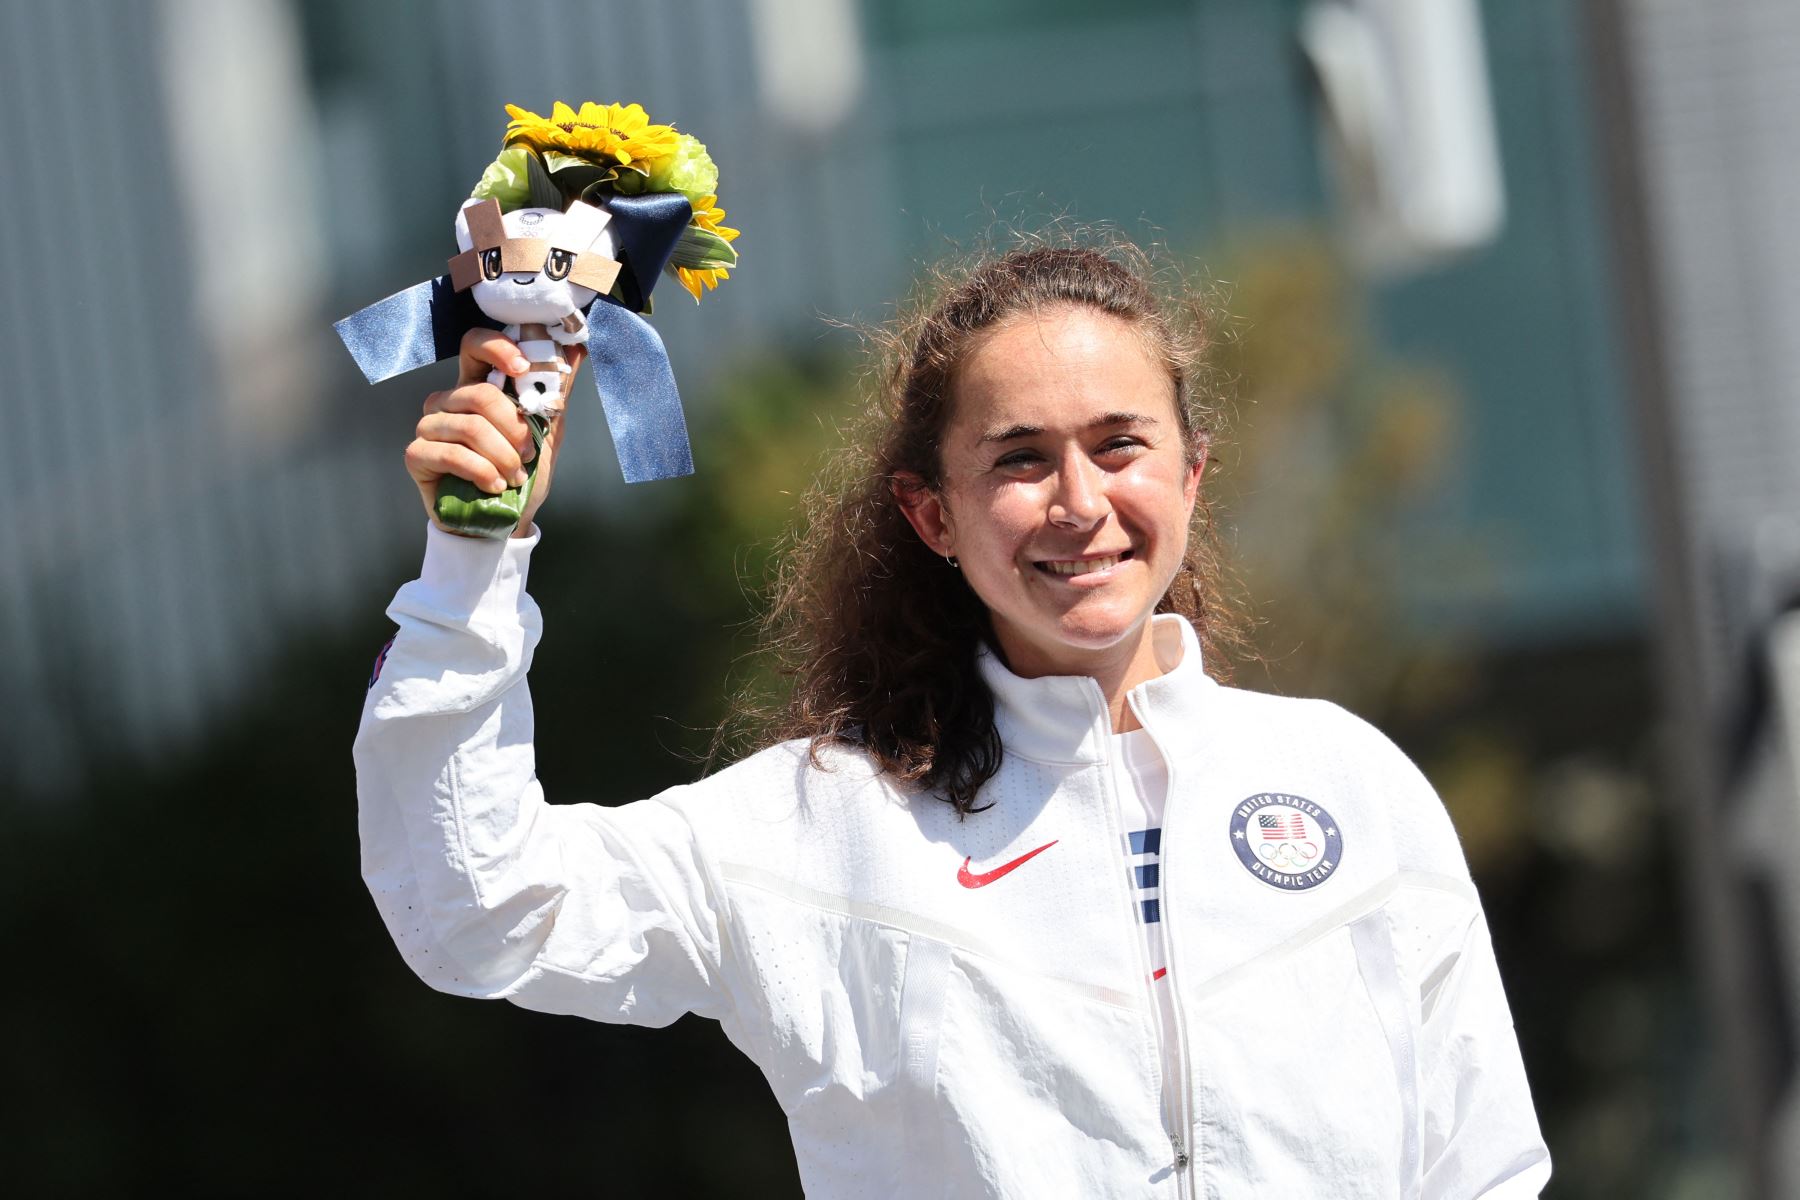 La medallista de bronce estadounidense Molly Seidel celebra después de la final del maratón femenino durante los Juegos Olímpicos de Tokio 2020 en Sapporo.
Foto: AFP